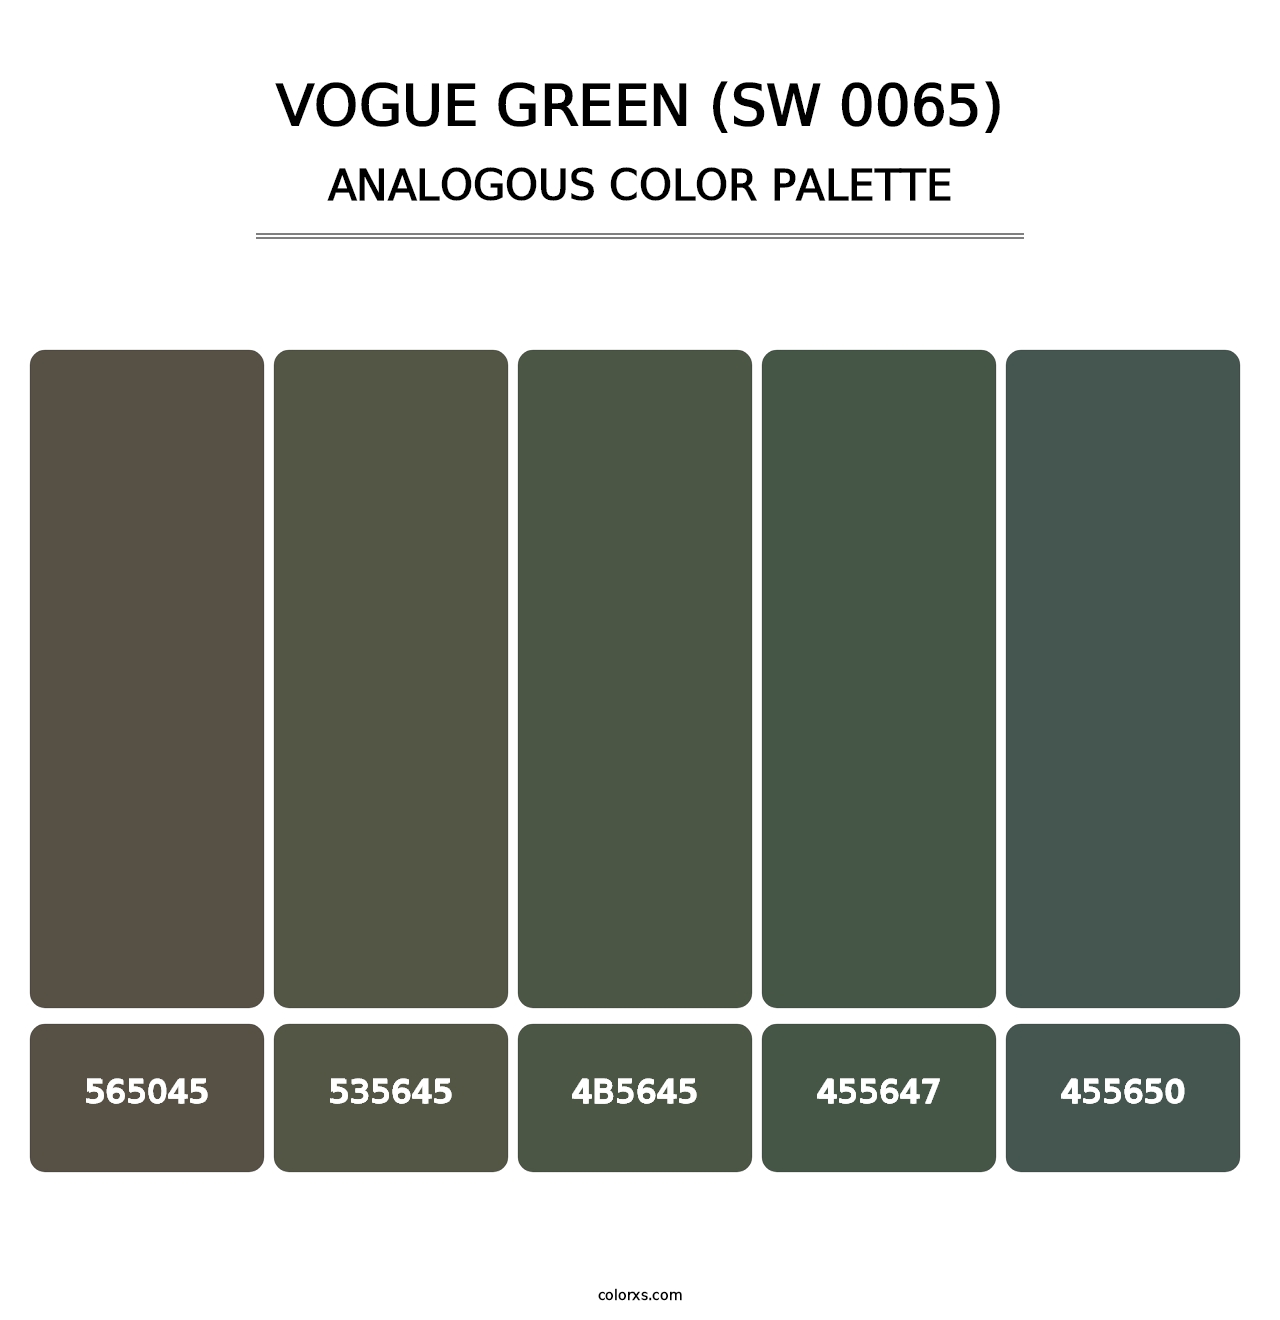 Vogue Green (SW 0065) - Analogous Color Palette